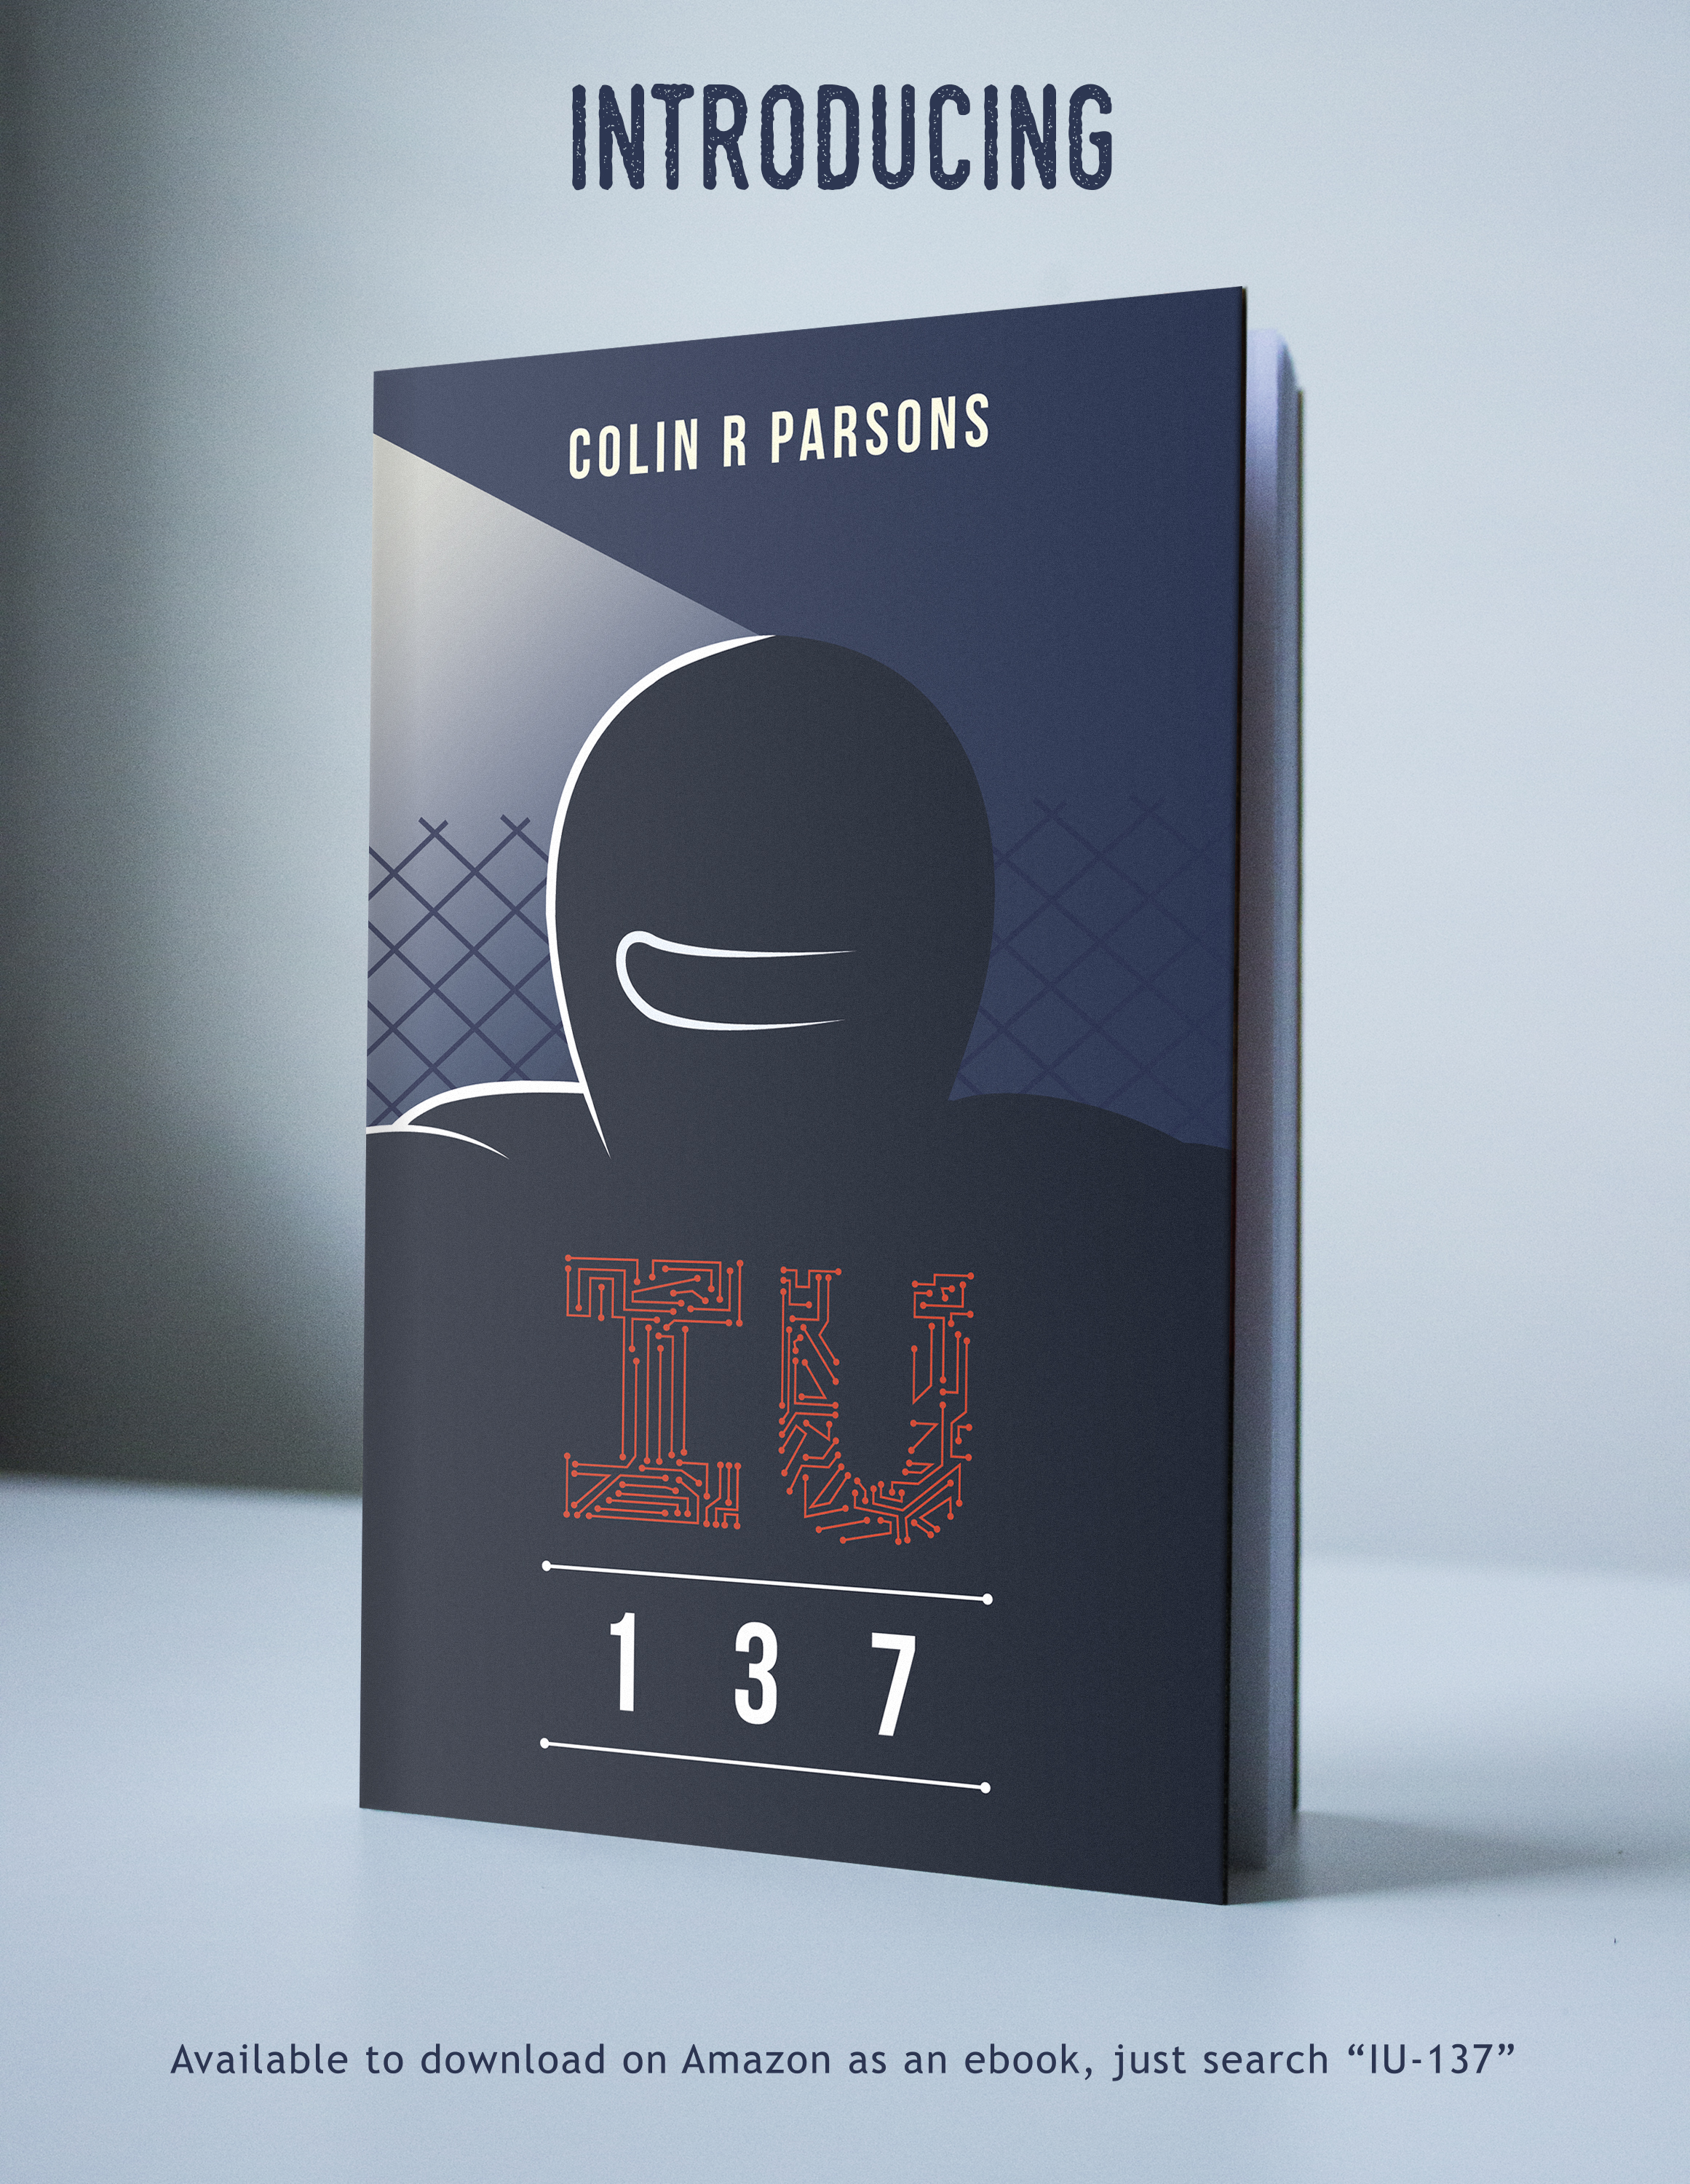 IU-137 book cover